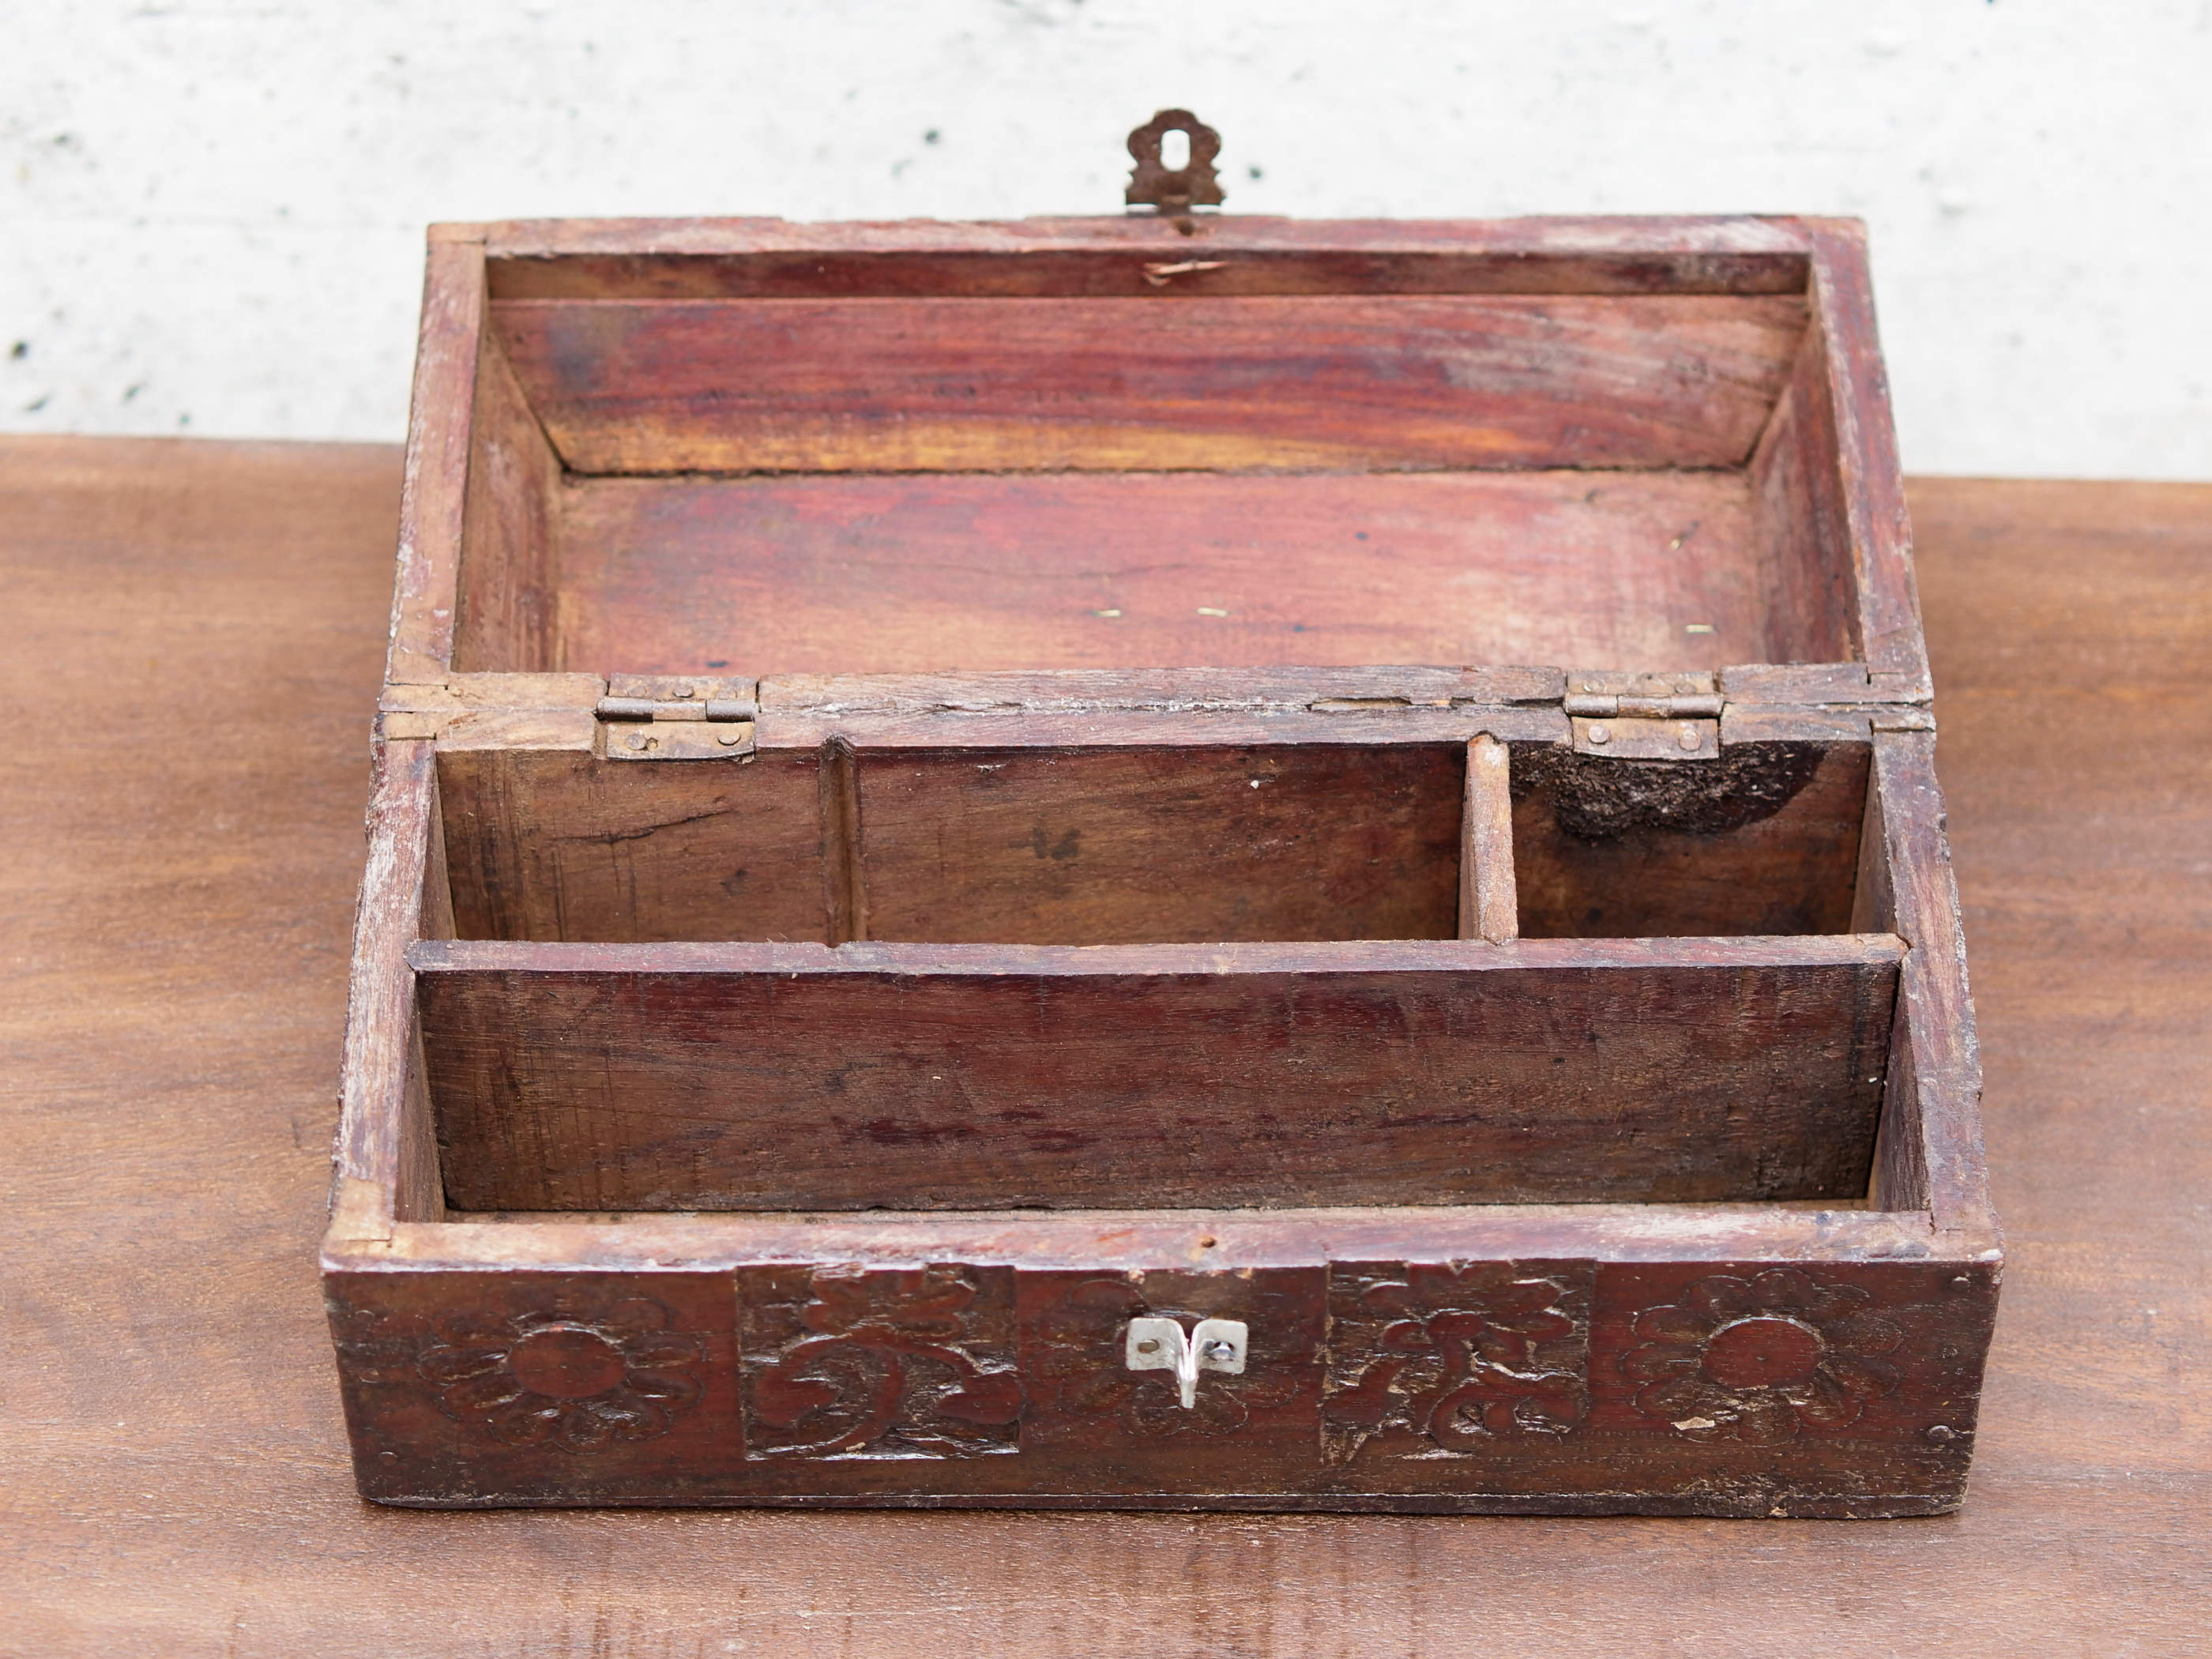 bauletto, scatola, box indiano in legno di teak e metallo. costruita ed assemblata artigianalmente, originale in ogni parte.  dimensioni 27x12 h13 cm